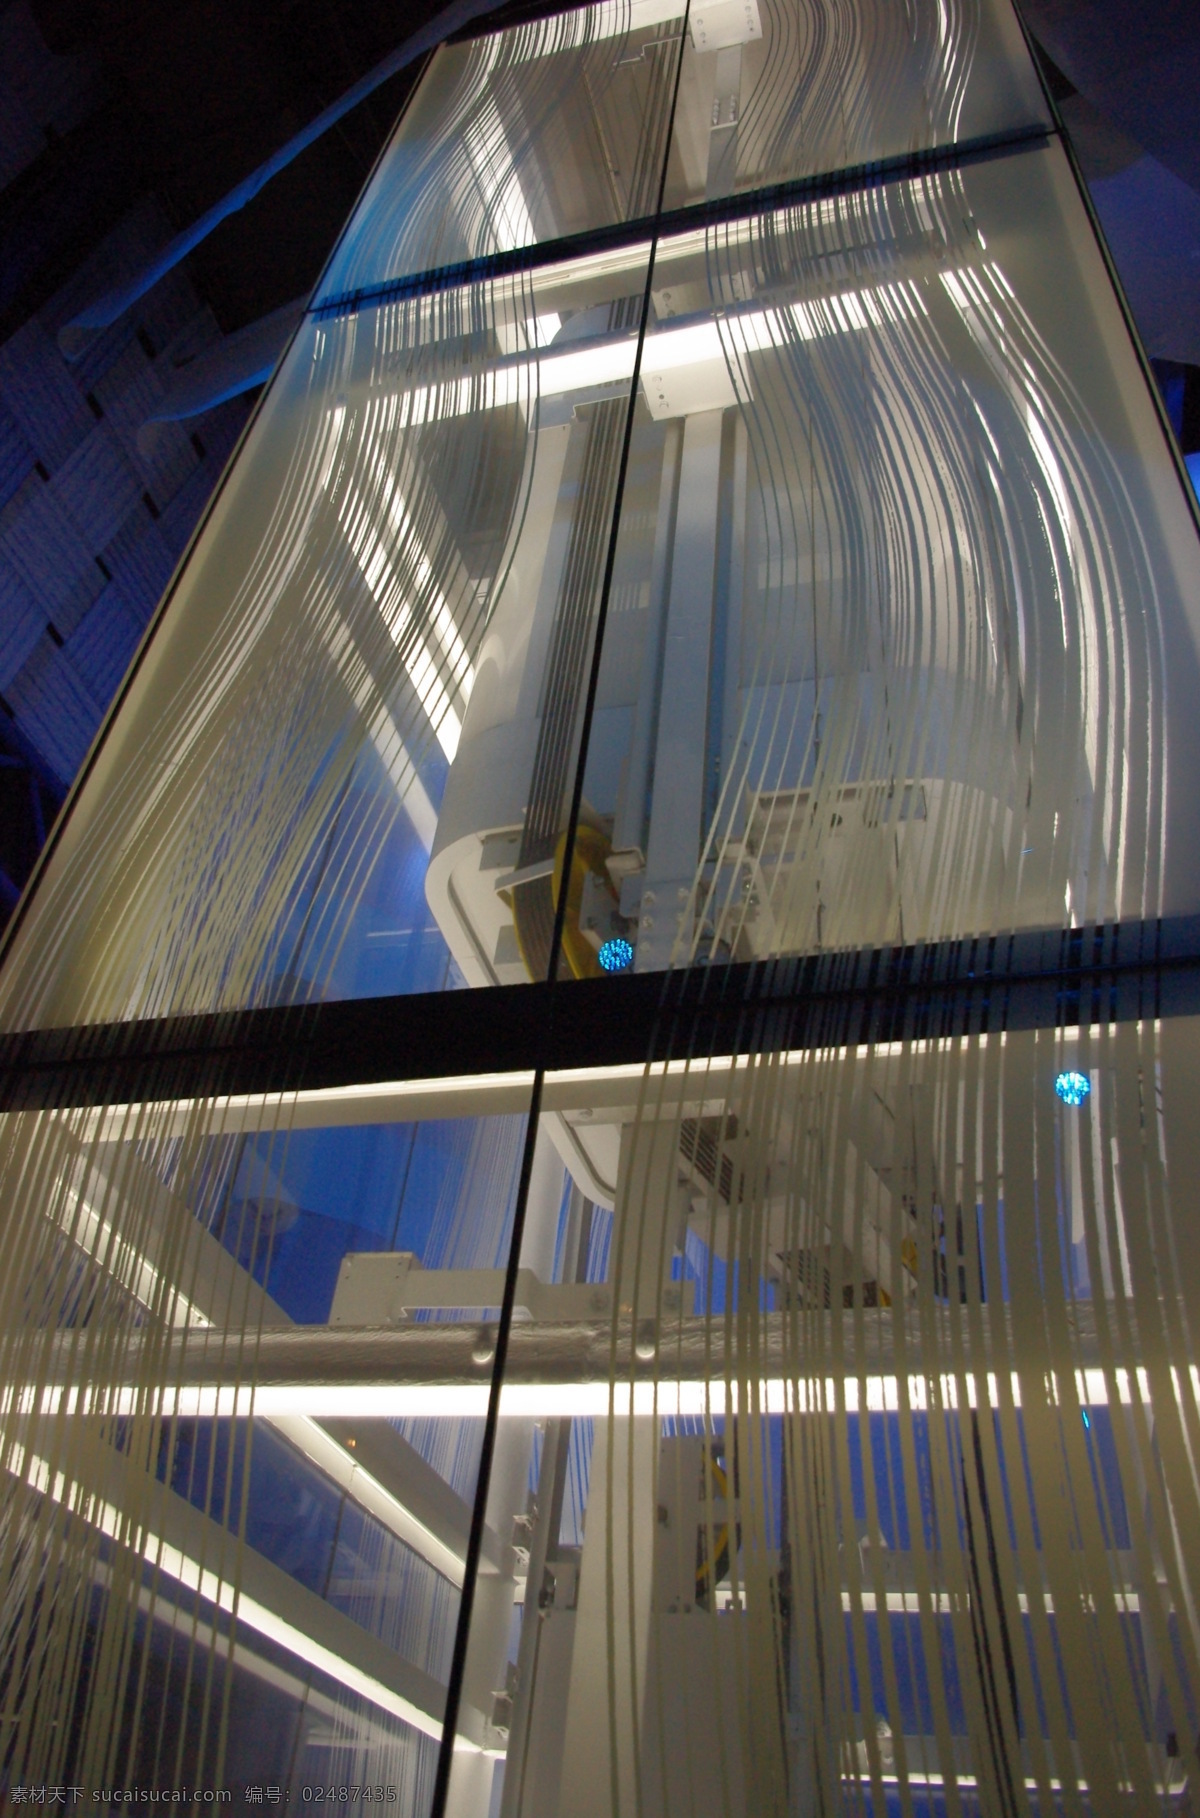 灯光设计 电梯 国内旅游 旅行 旅游摄影 世博会 艺术摄影 水晶电梯 电梯设计 装置艺术 世博展览 玻璃电梯 家居装饰素材 展示设计